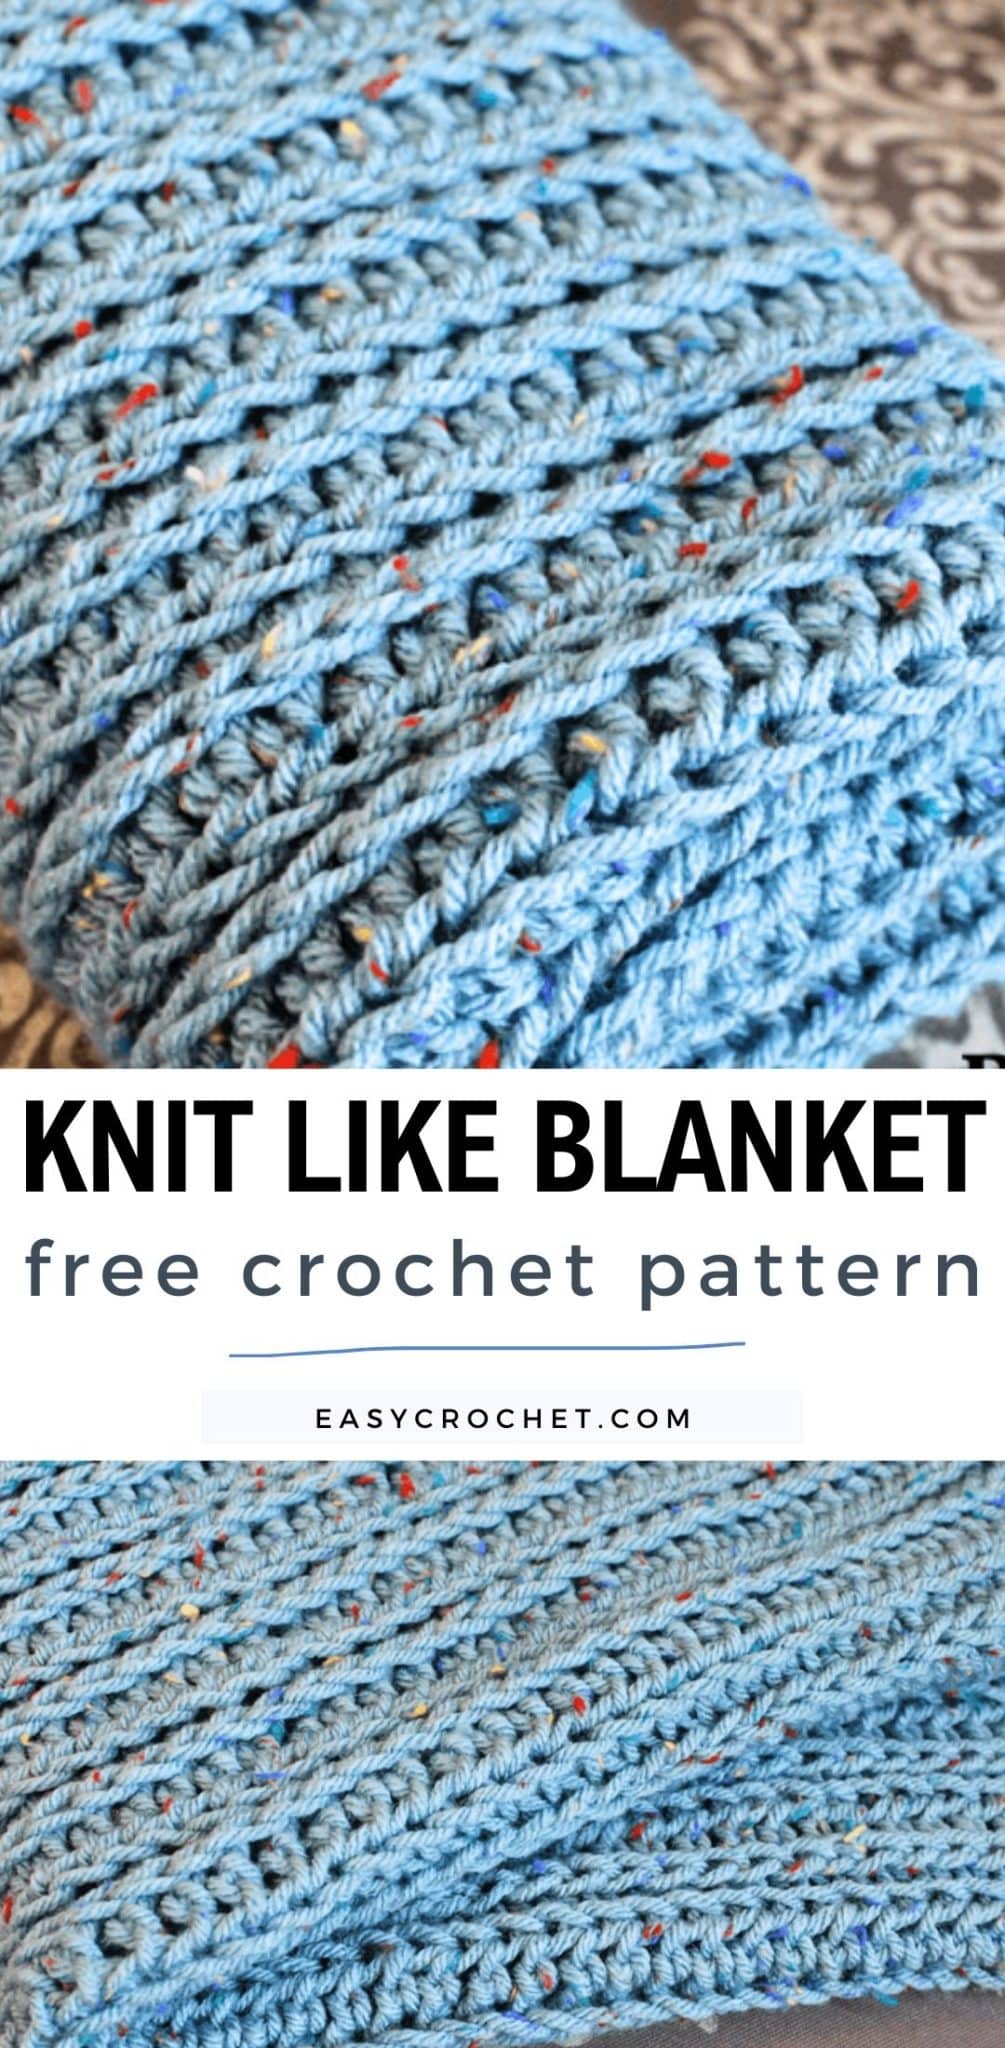 knit like blanket crochet pattern